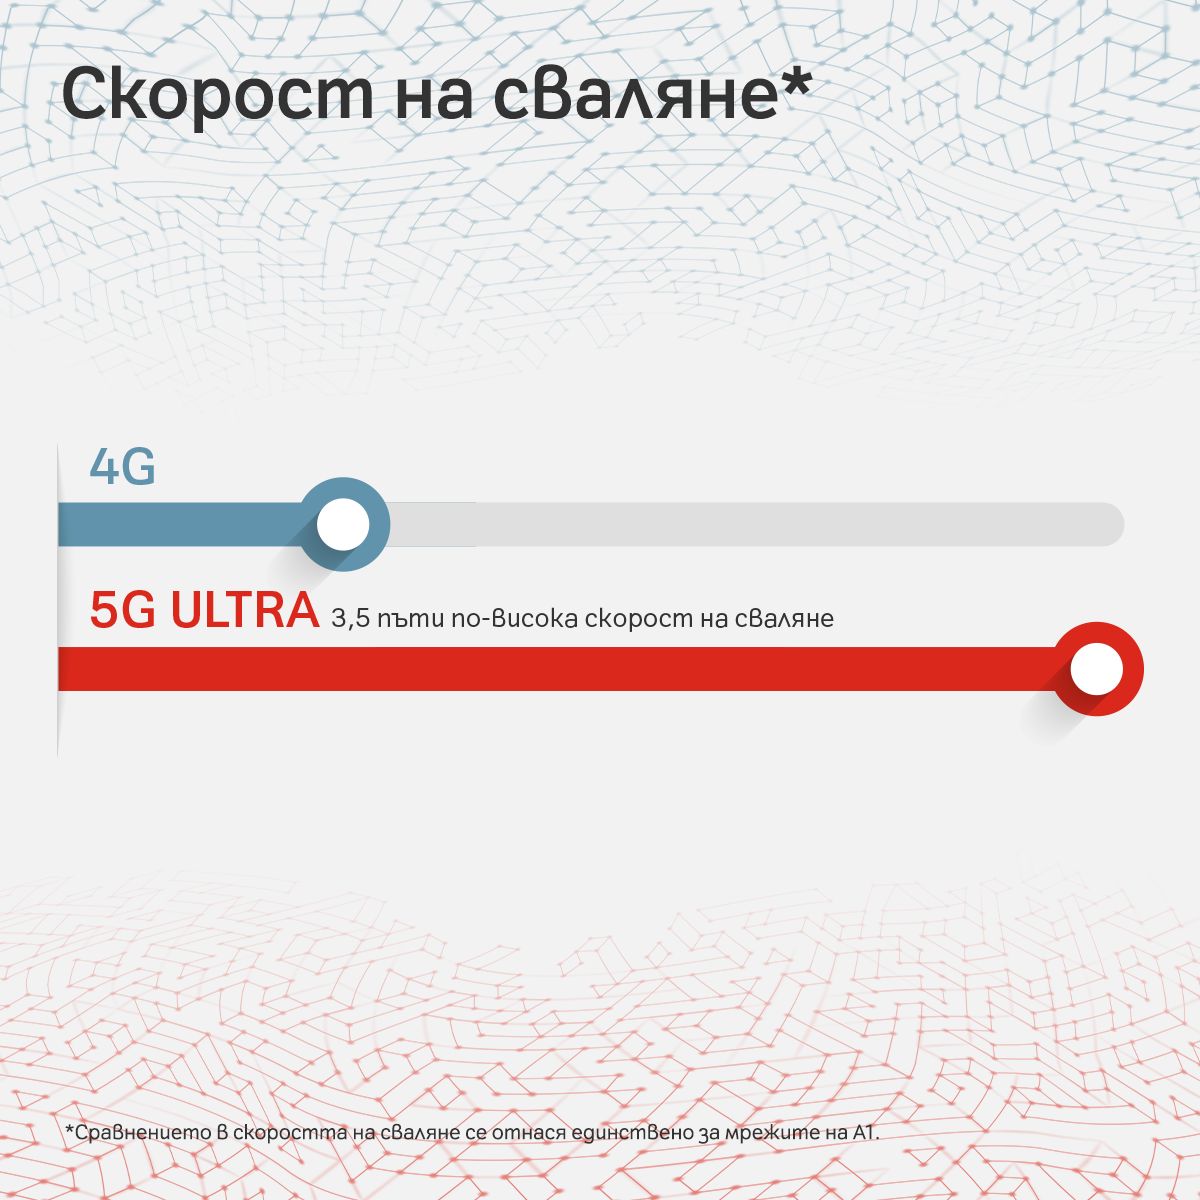 5G ULTRA е най-бързият 5G план у нас